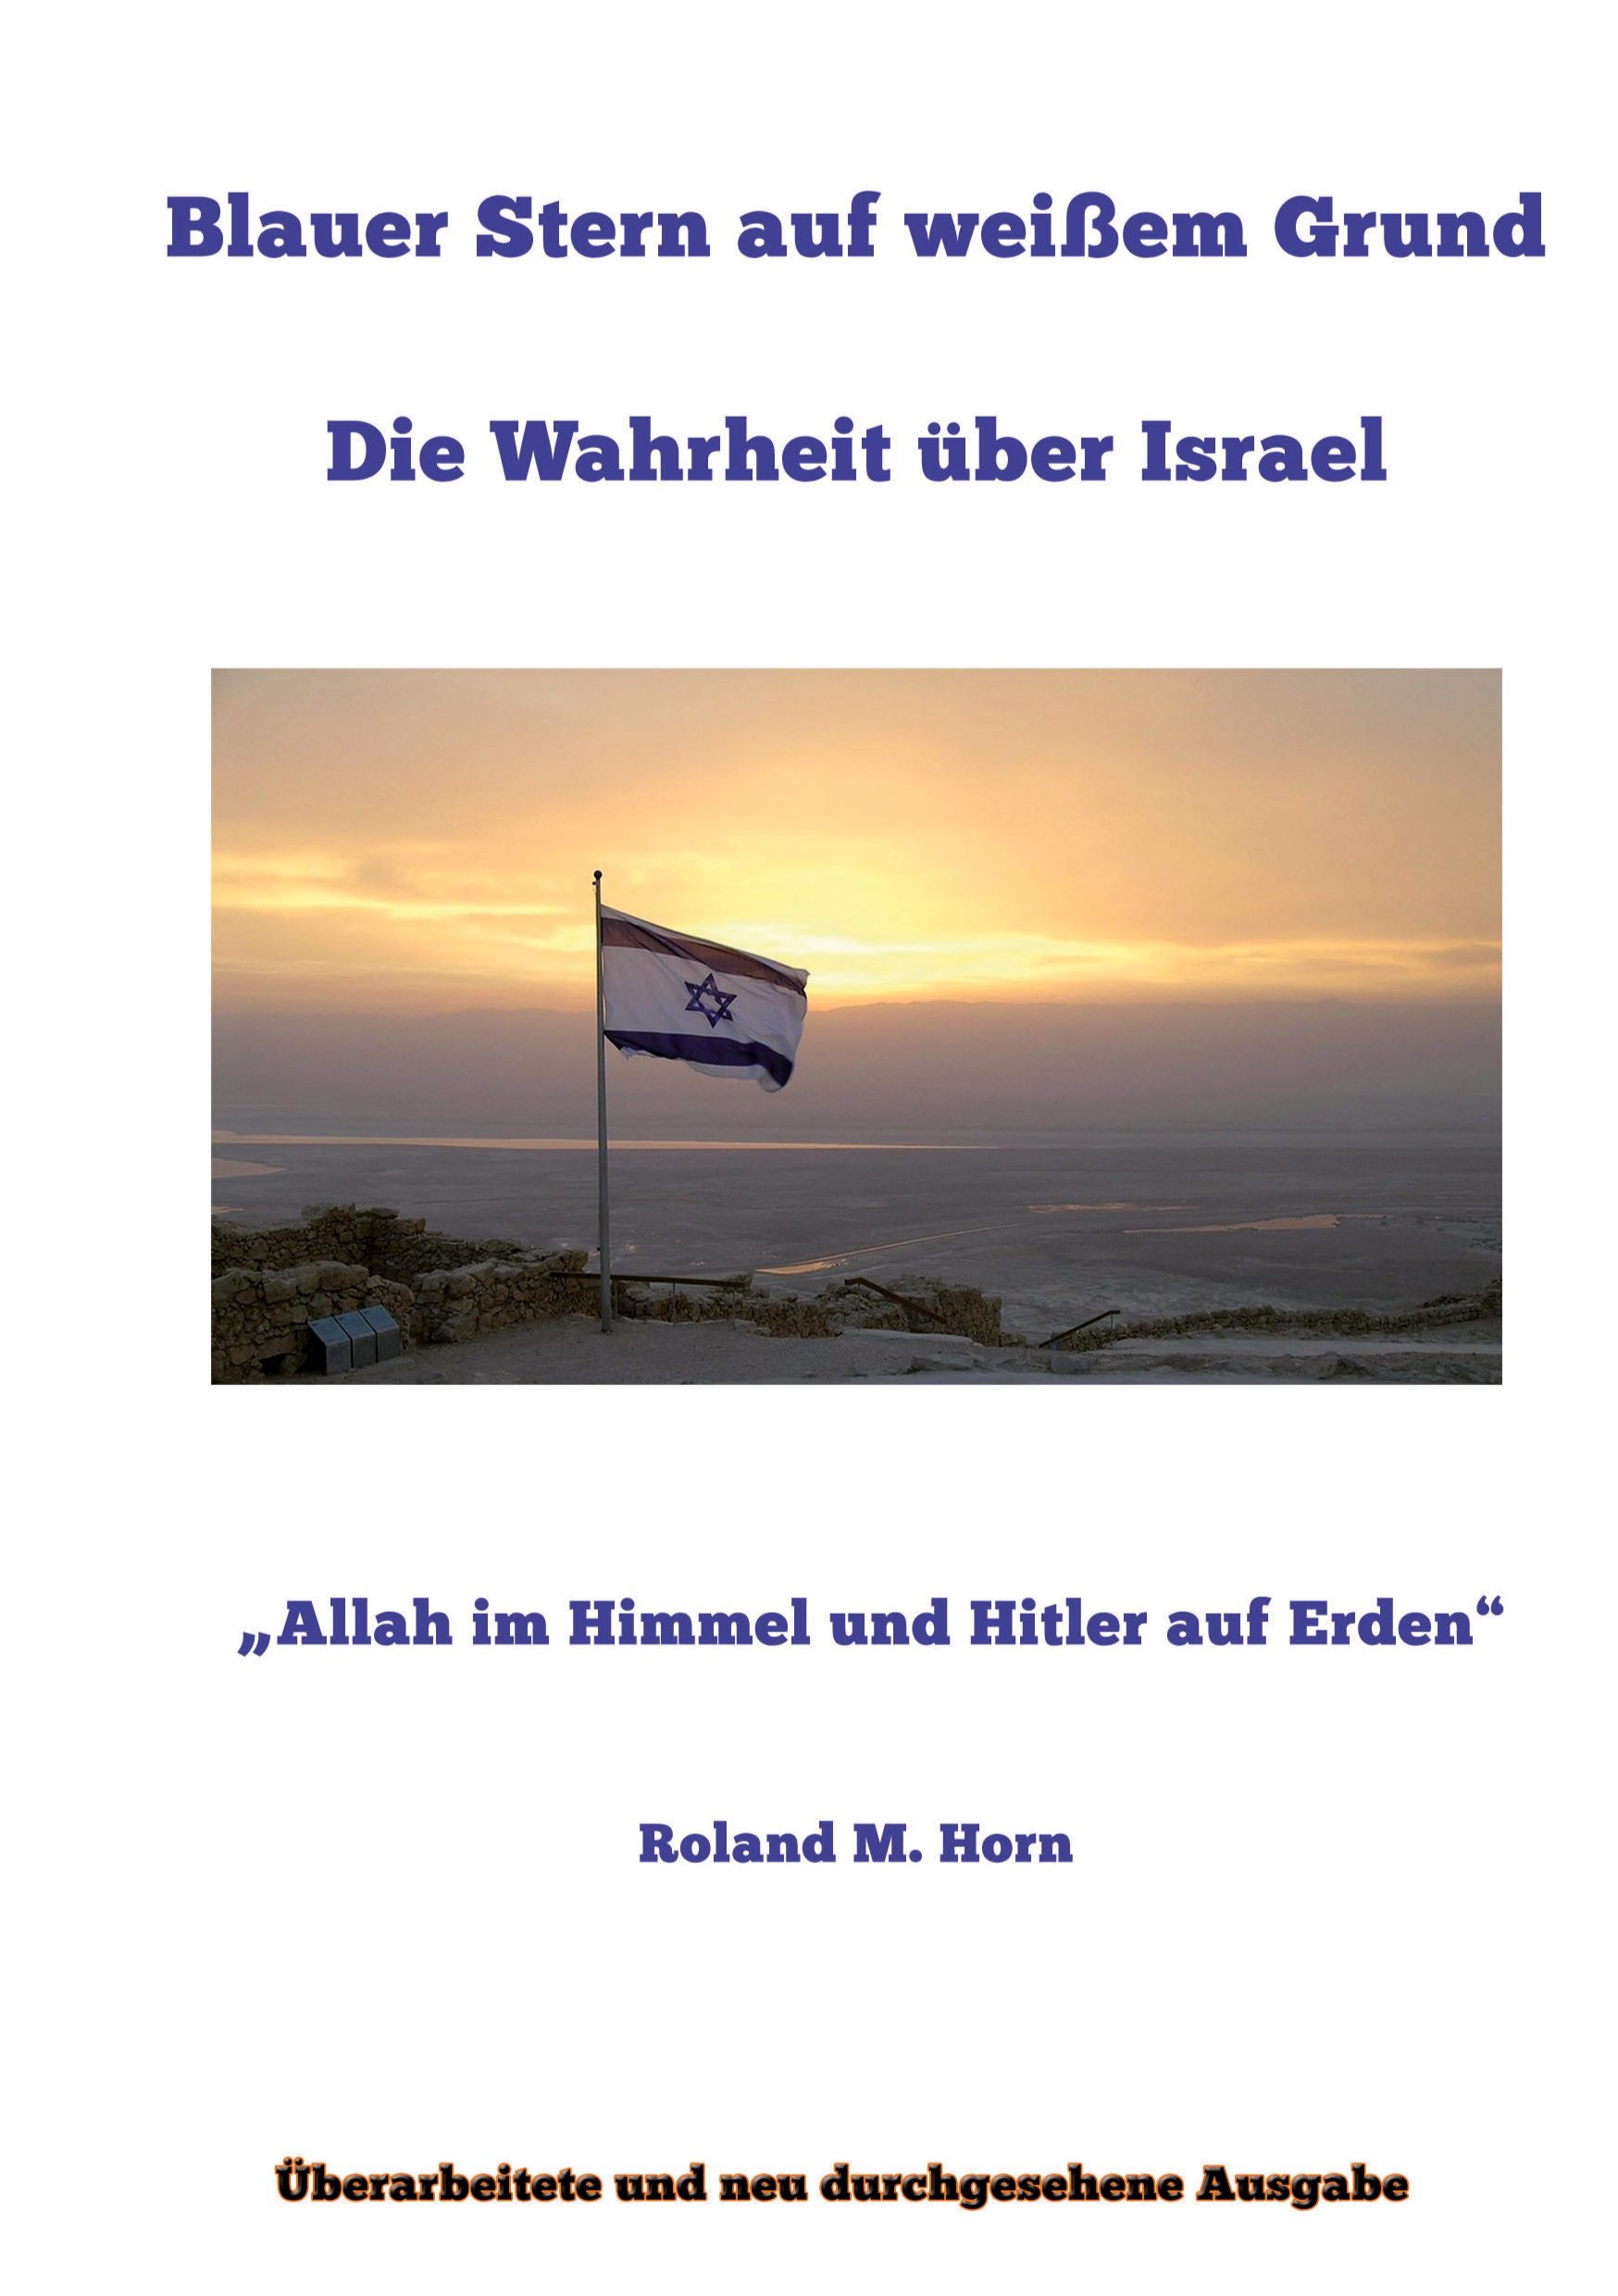 Roland M. Horn: Blauer Stern auf weißem Grund: Die Wahrheit über Israel (Cover)